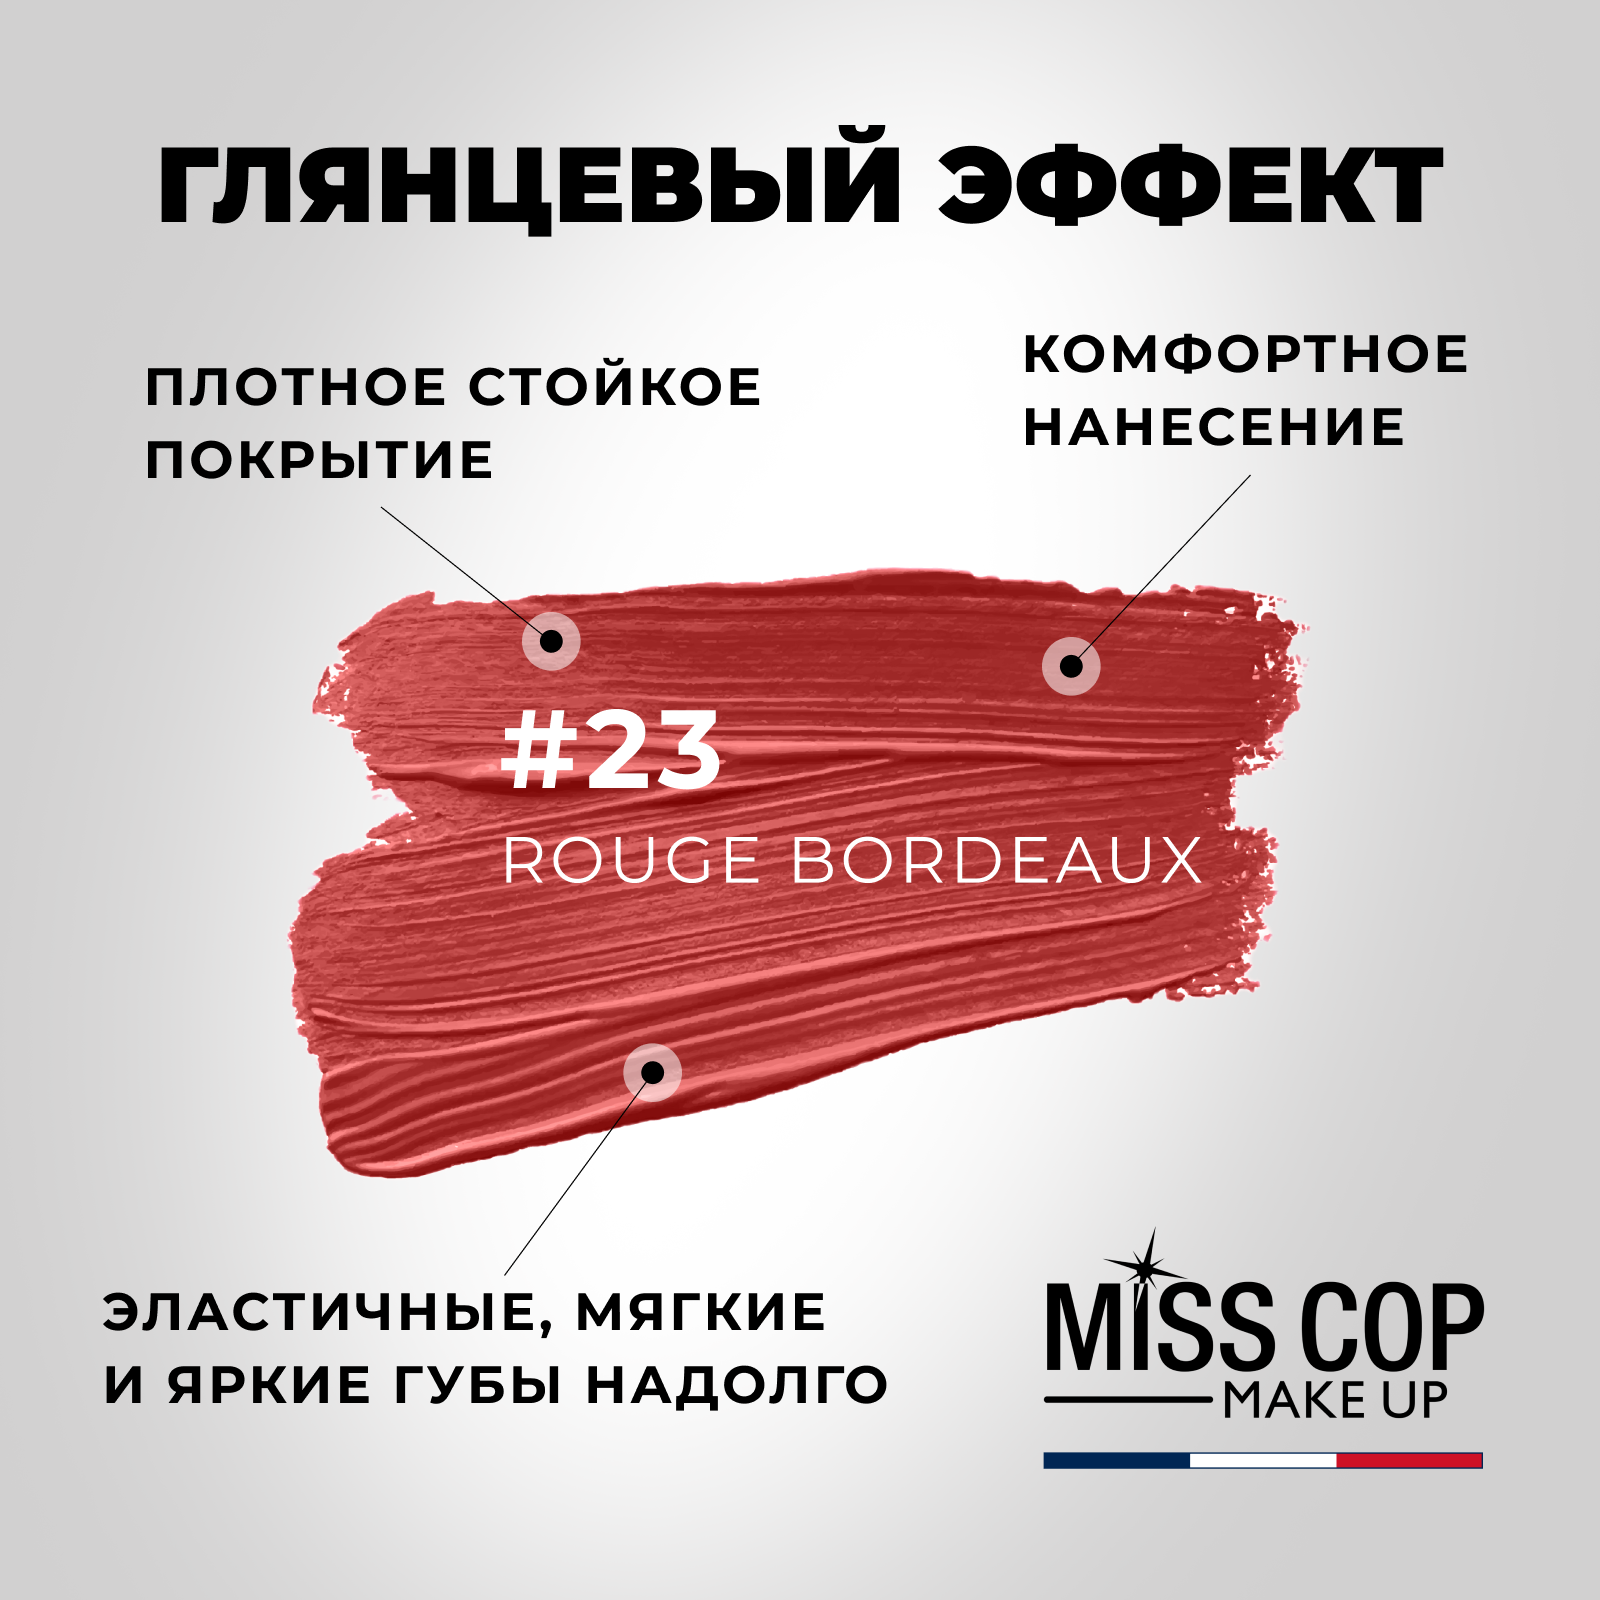 Помада губная матовая, стойкая MISS COP цвет 23 Rouge bordeaux (красное бордо), 3 г